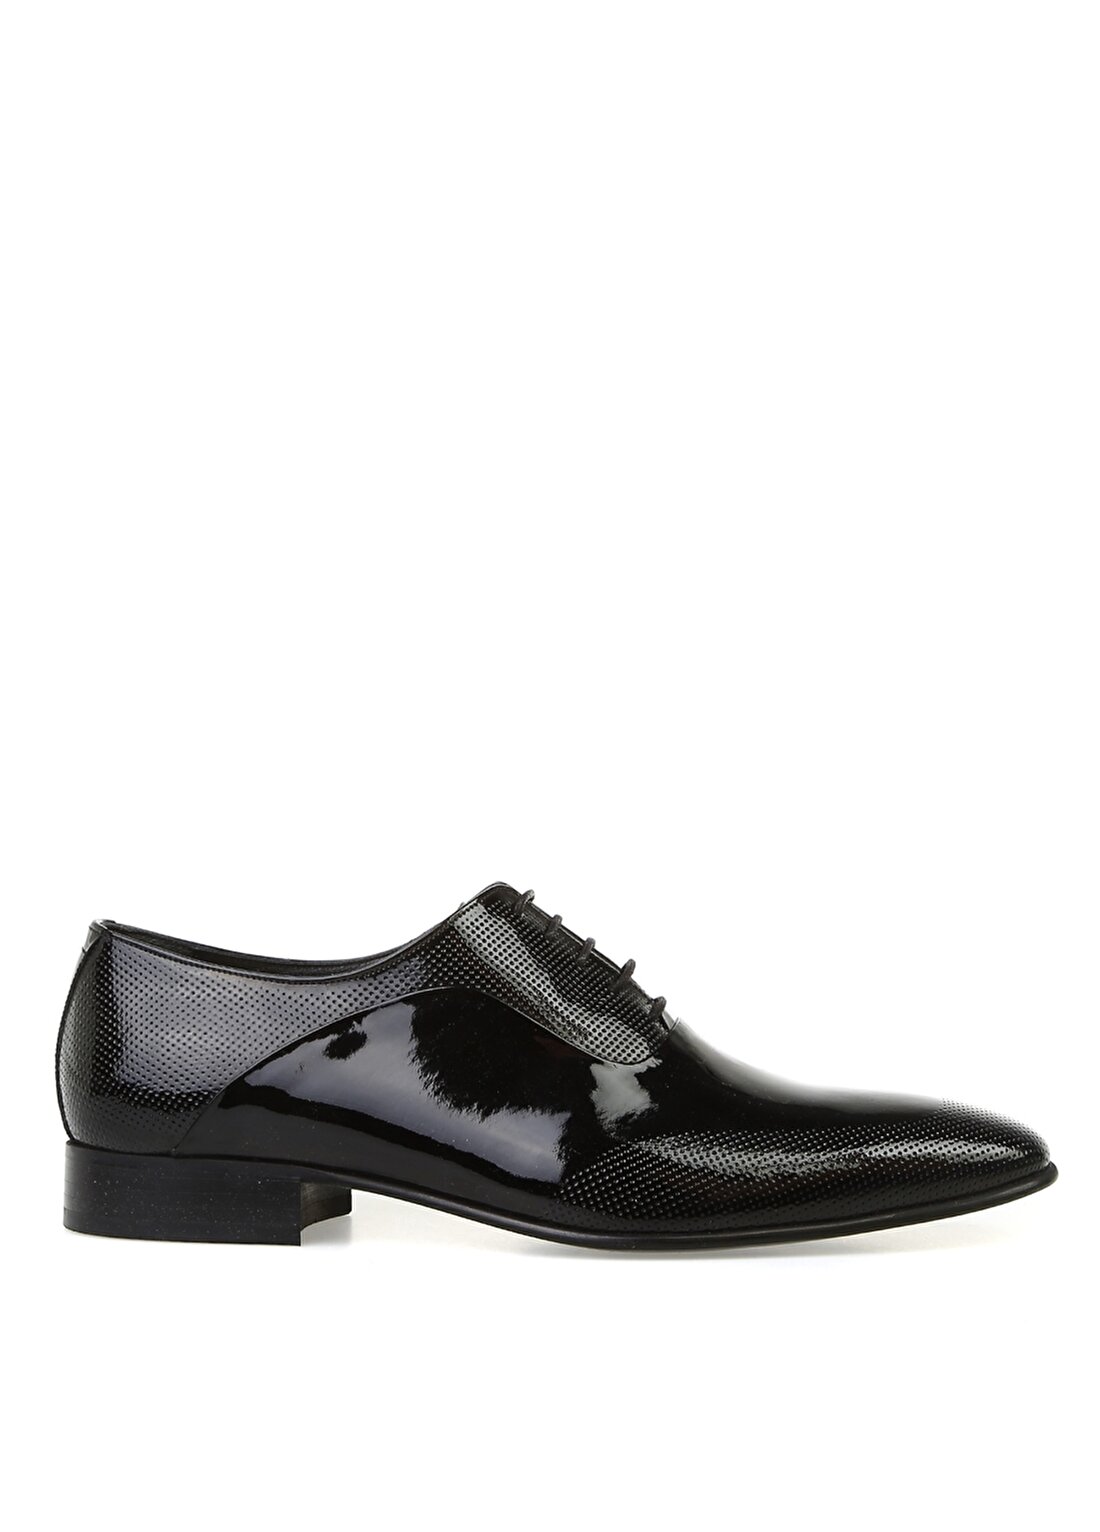 Kemal Tanca Kısa Topuklu Sivri Uçlu Bağcıklı Parlak Siyah Erkek Klasik Ayakkabı